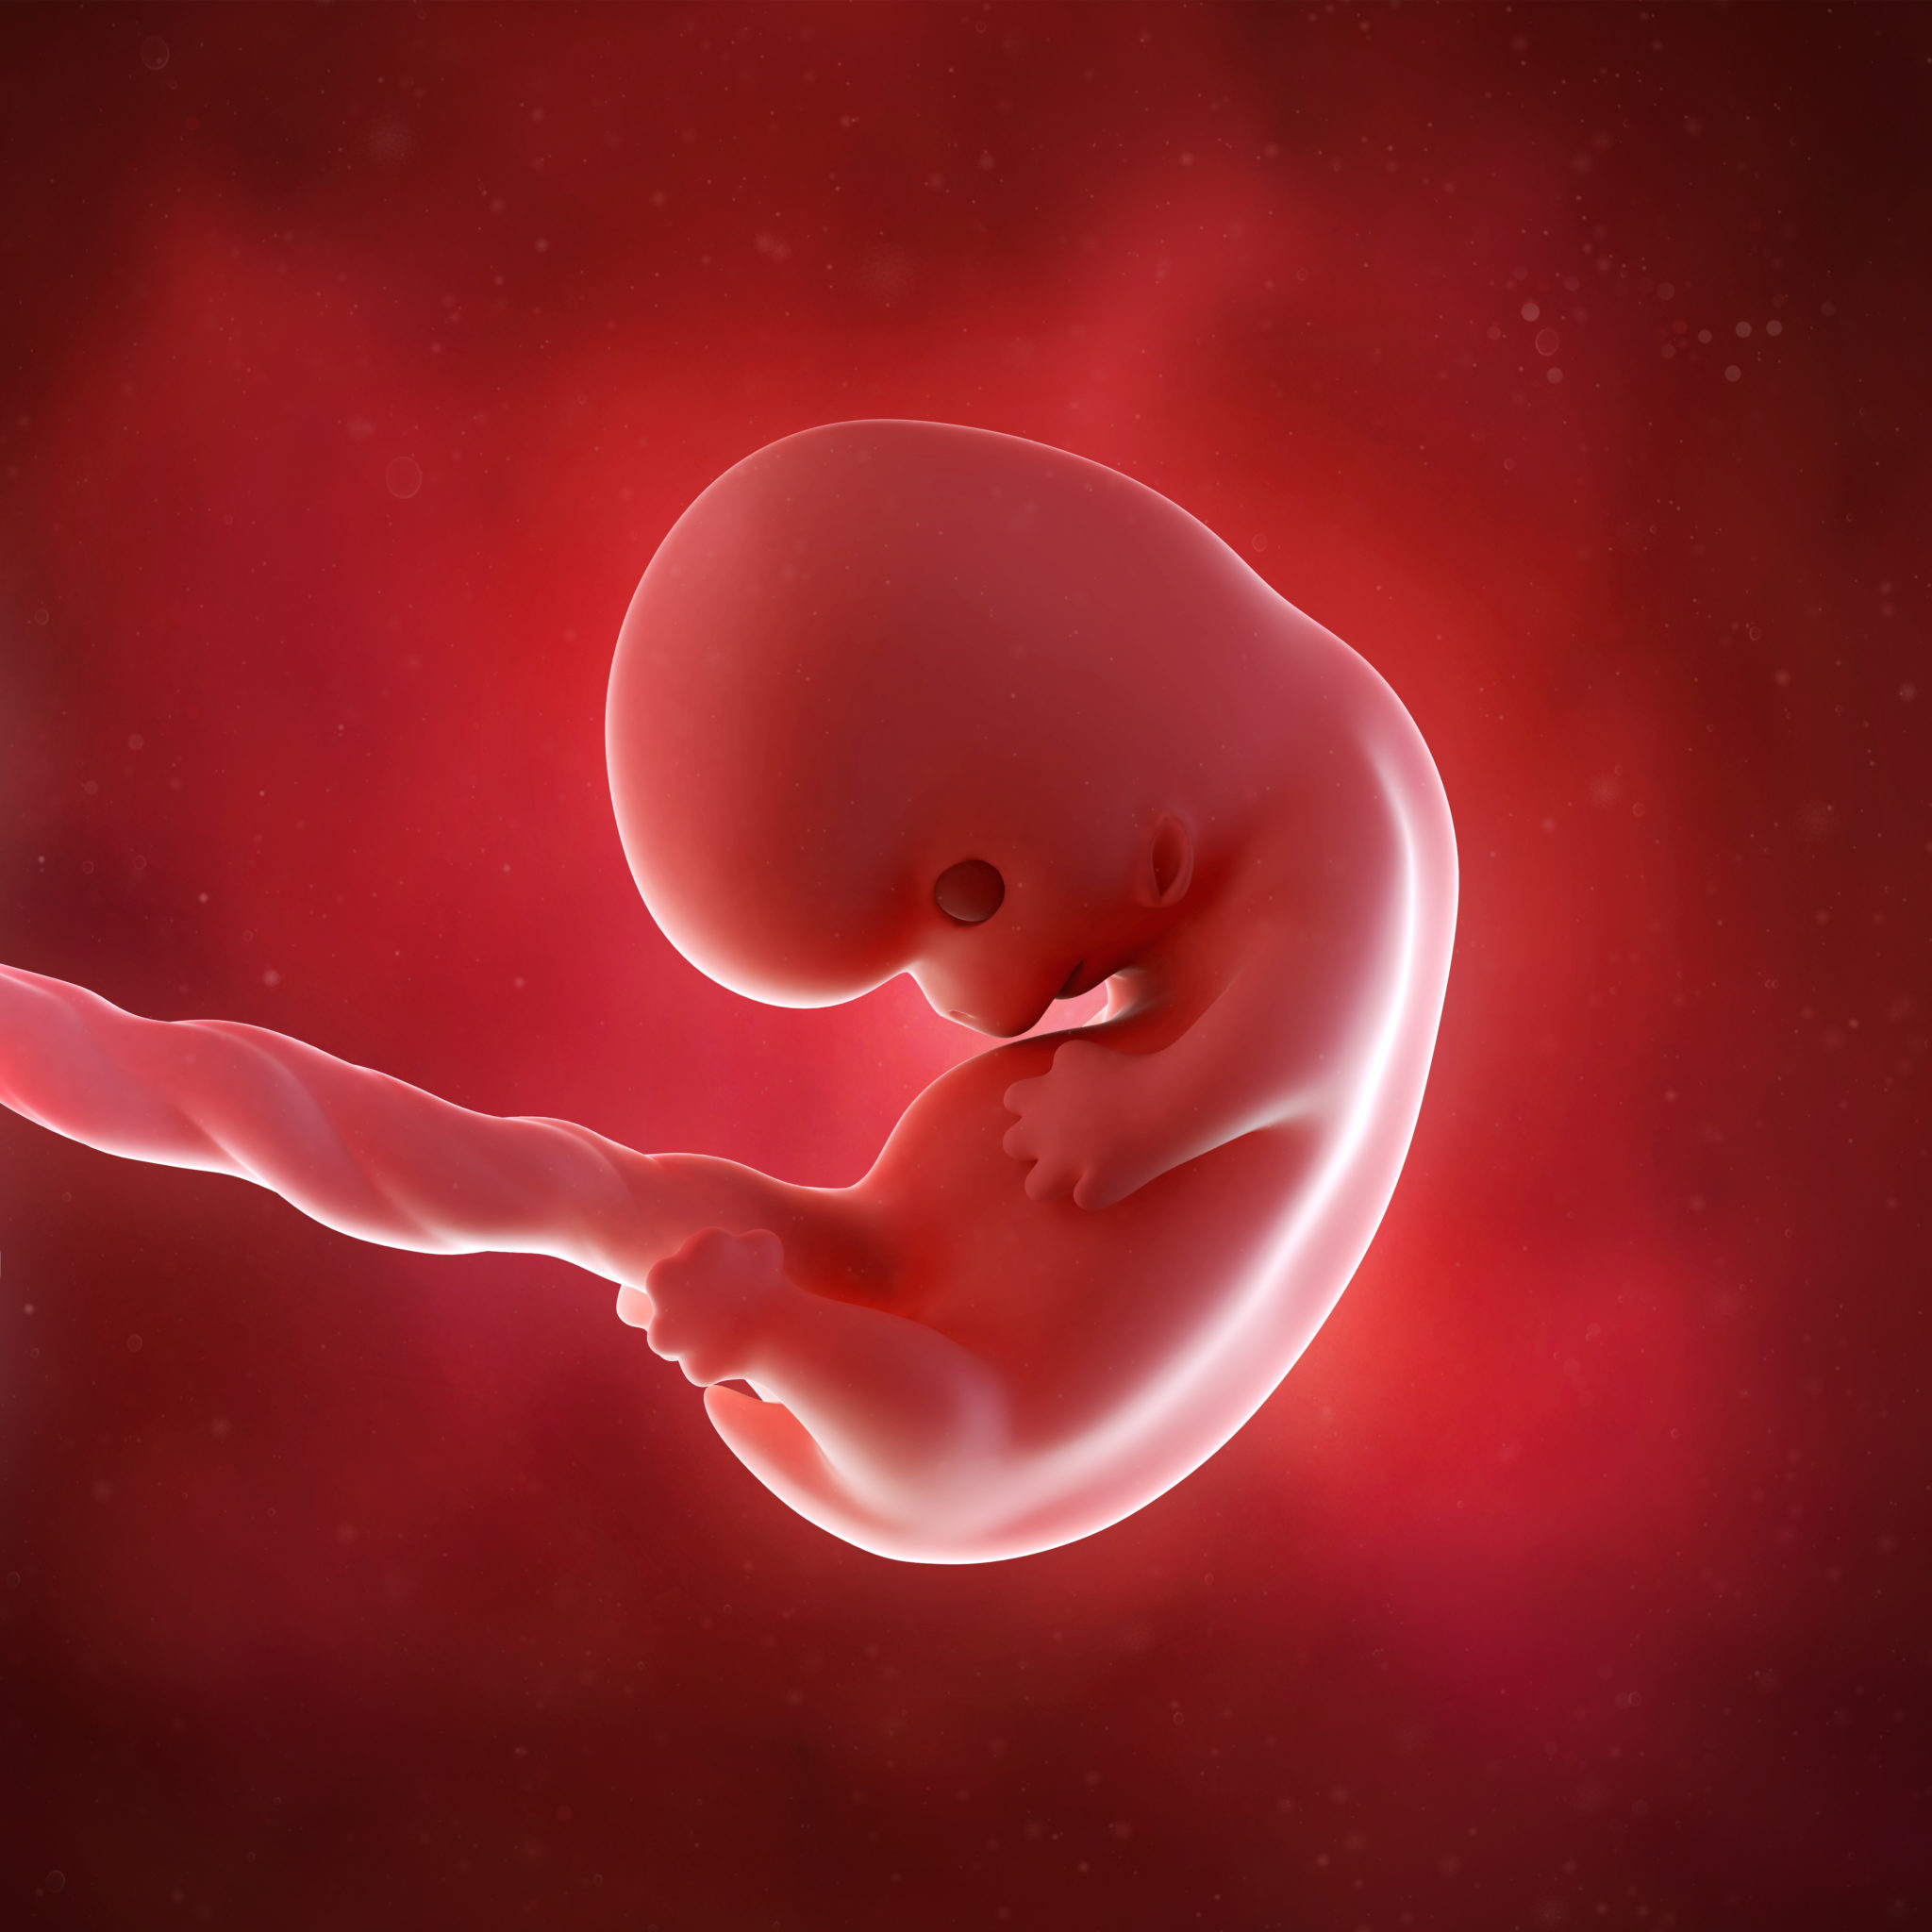 Что происходит на 8 неделе. Эмбрион на 8 неделе беременности. Зародыш 2-3 недели беременности.